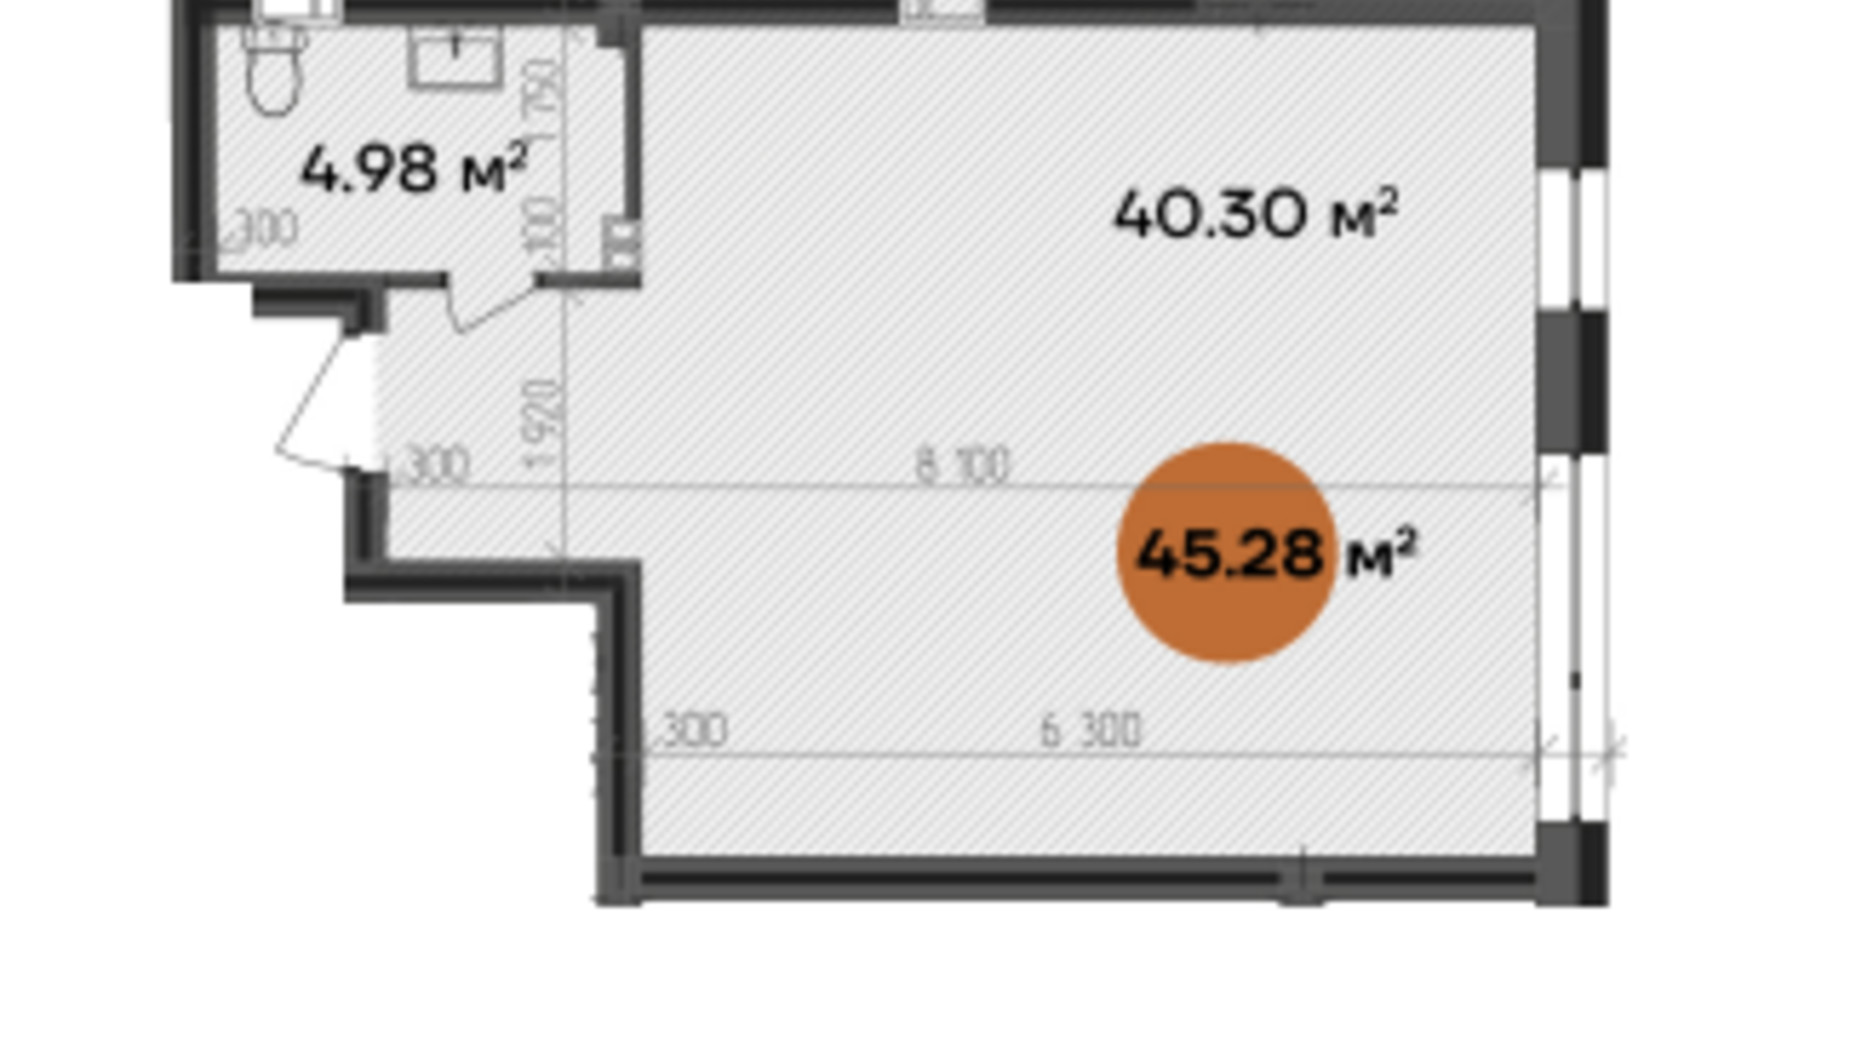 Планування приміщення в БФК Shevchenka 45.28 м², фото 607274